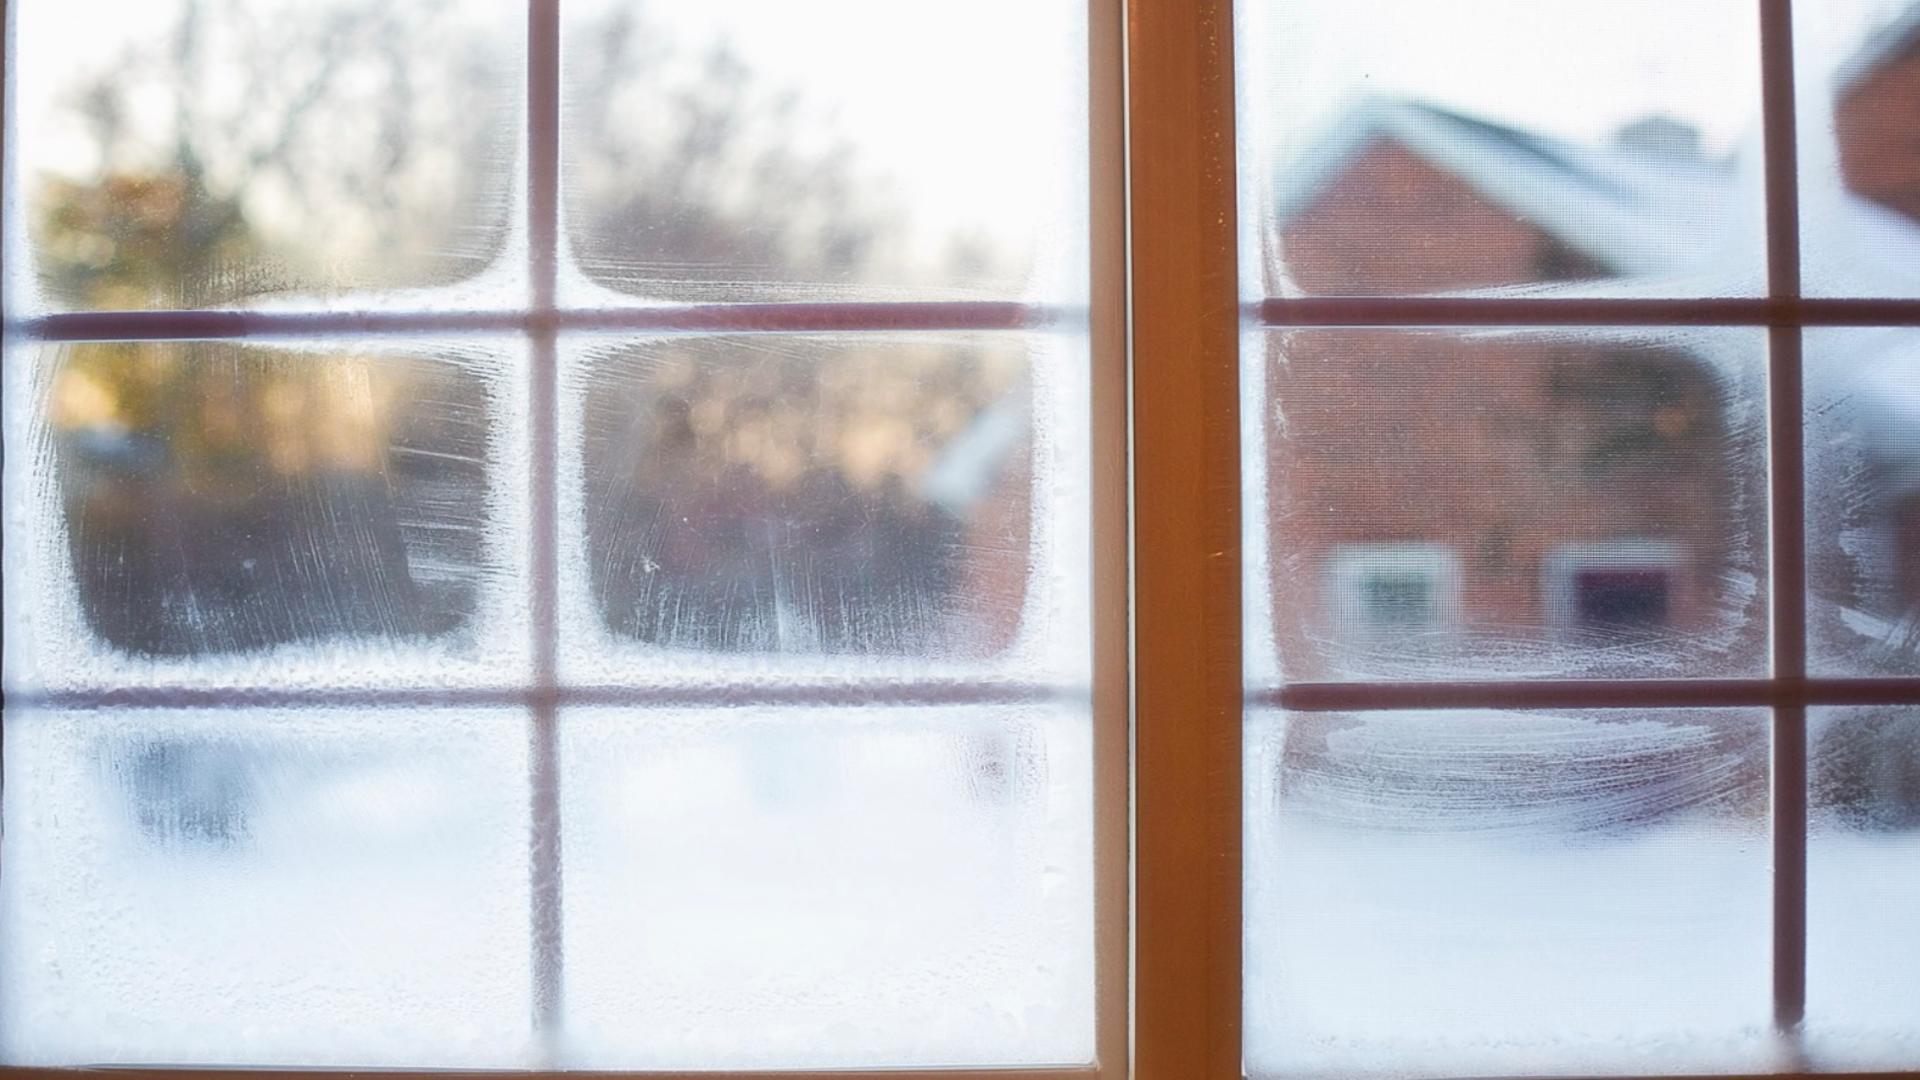 Cum reglezi termopanele pentru iarnă. Așa păstrezi căldura în casă și facturile mici – FOTO